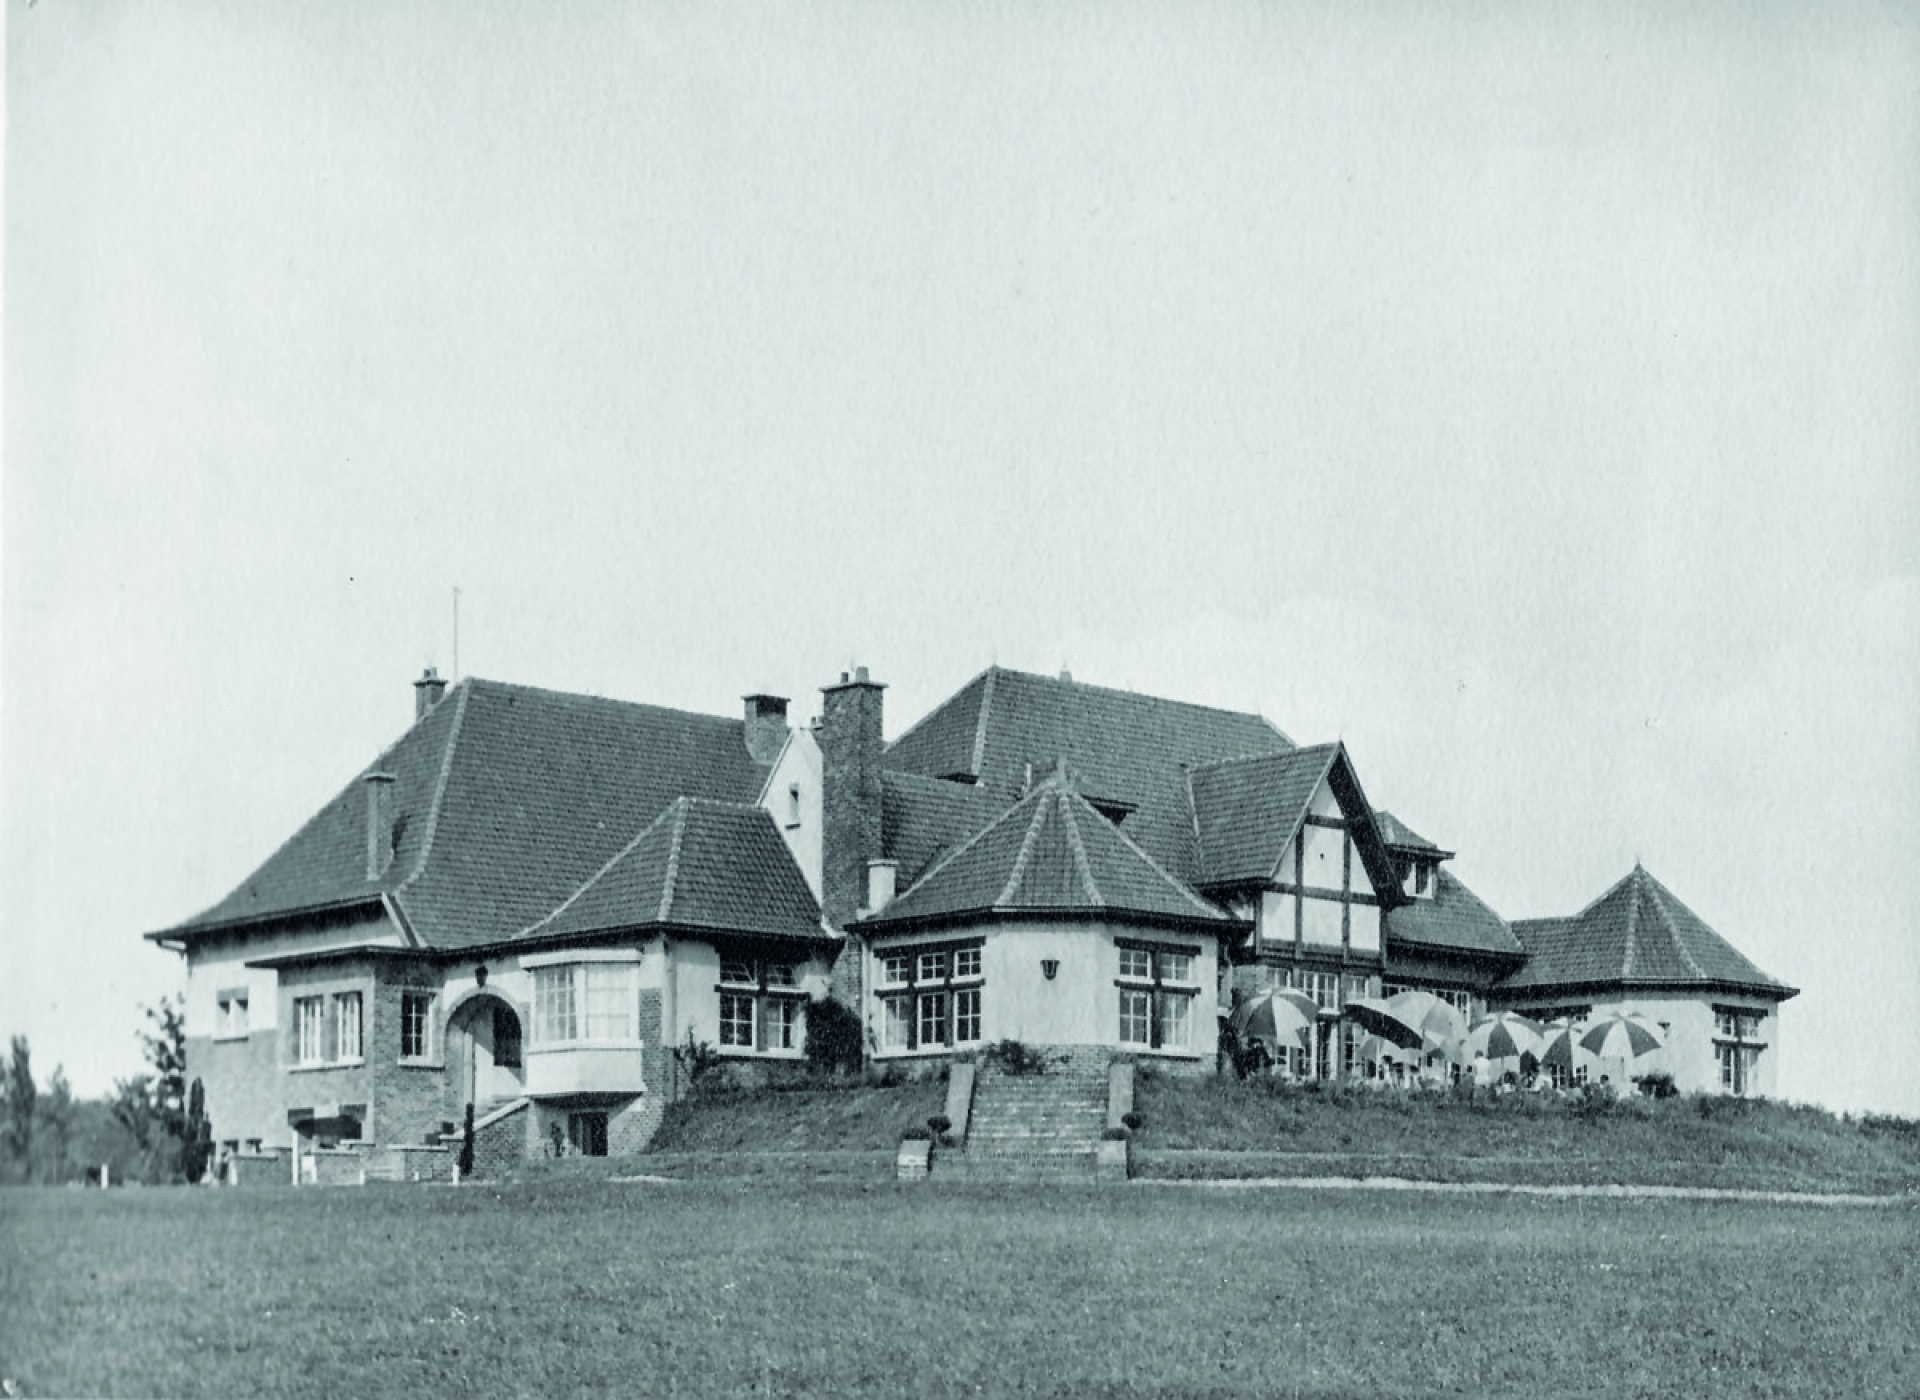 Le club house - 1928